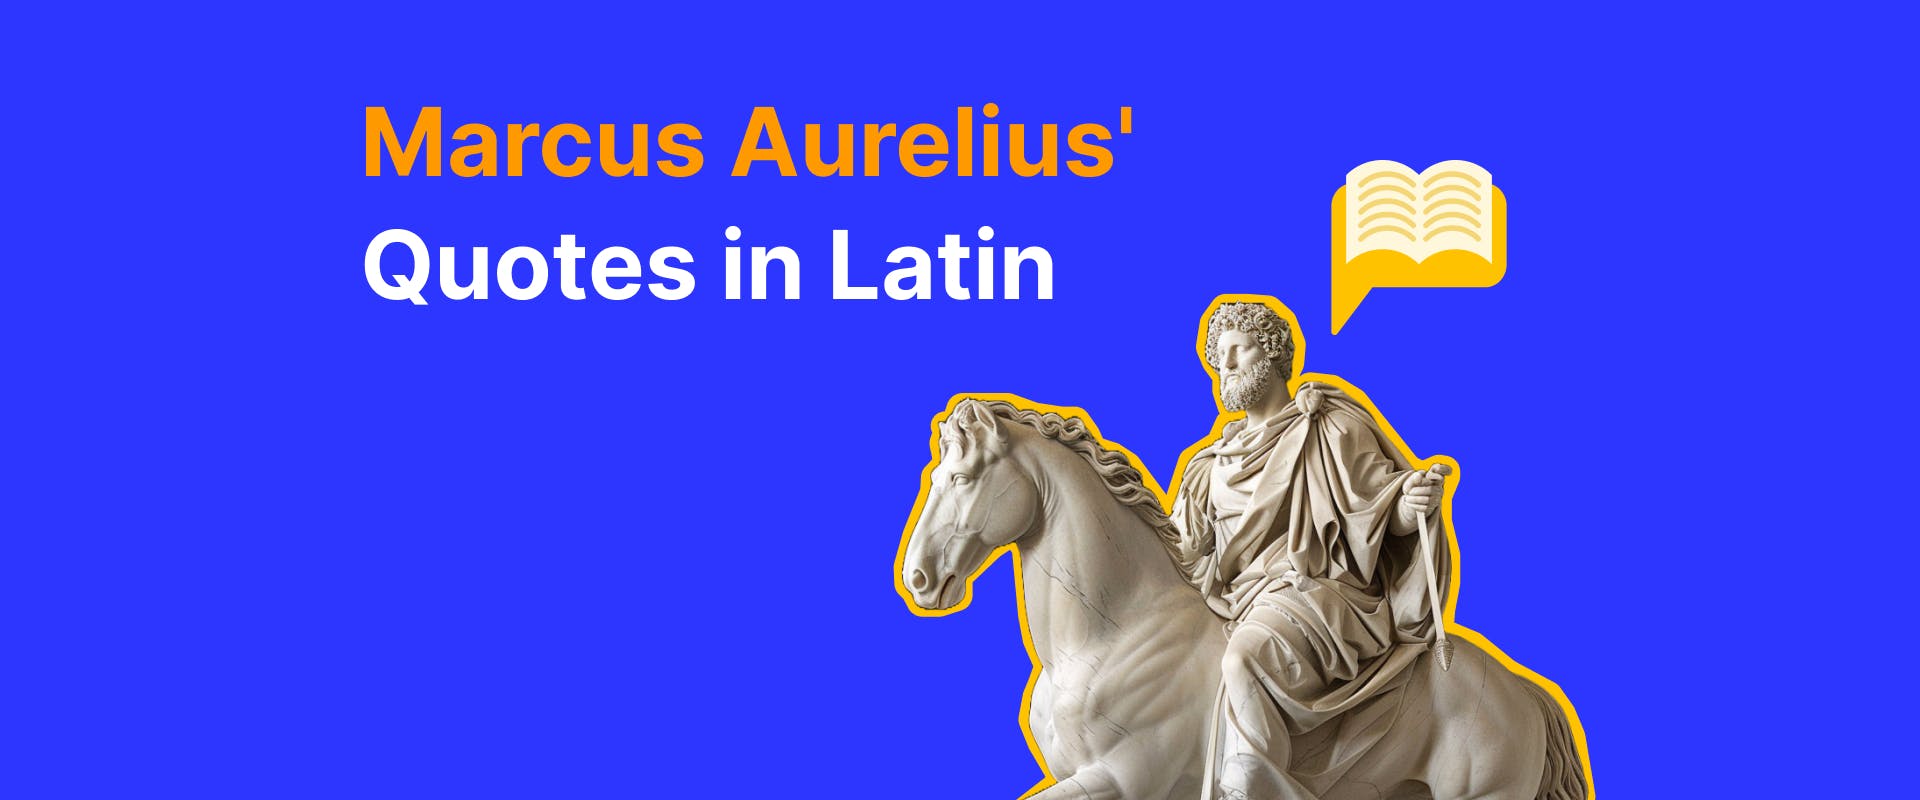 Marcus Aurelius' quotes in Latin